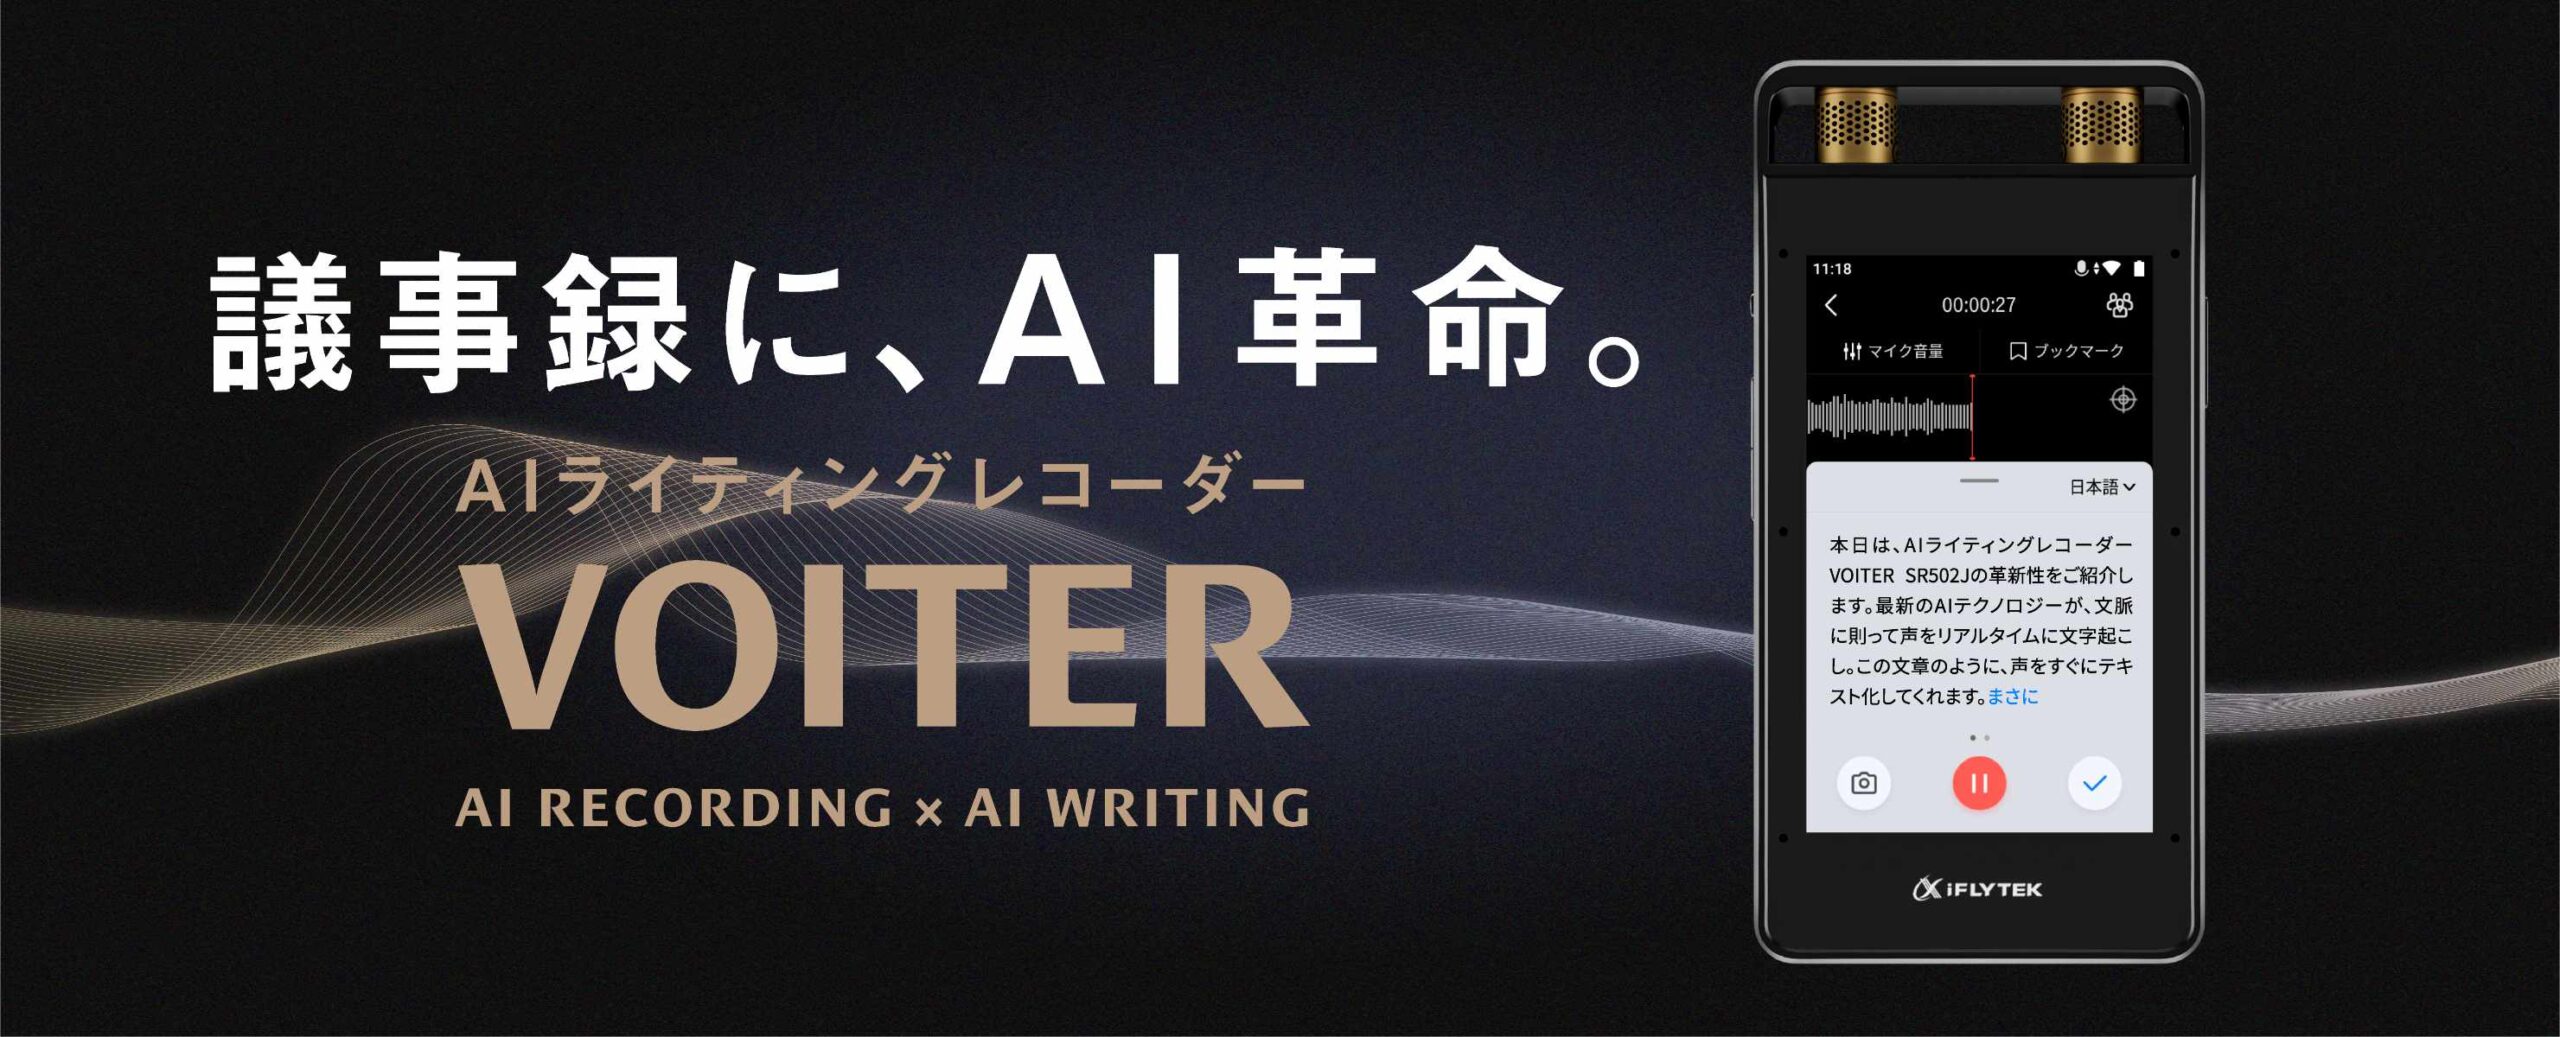 VOITER | iFLYTEK JAPAN AI SOLUTIONS